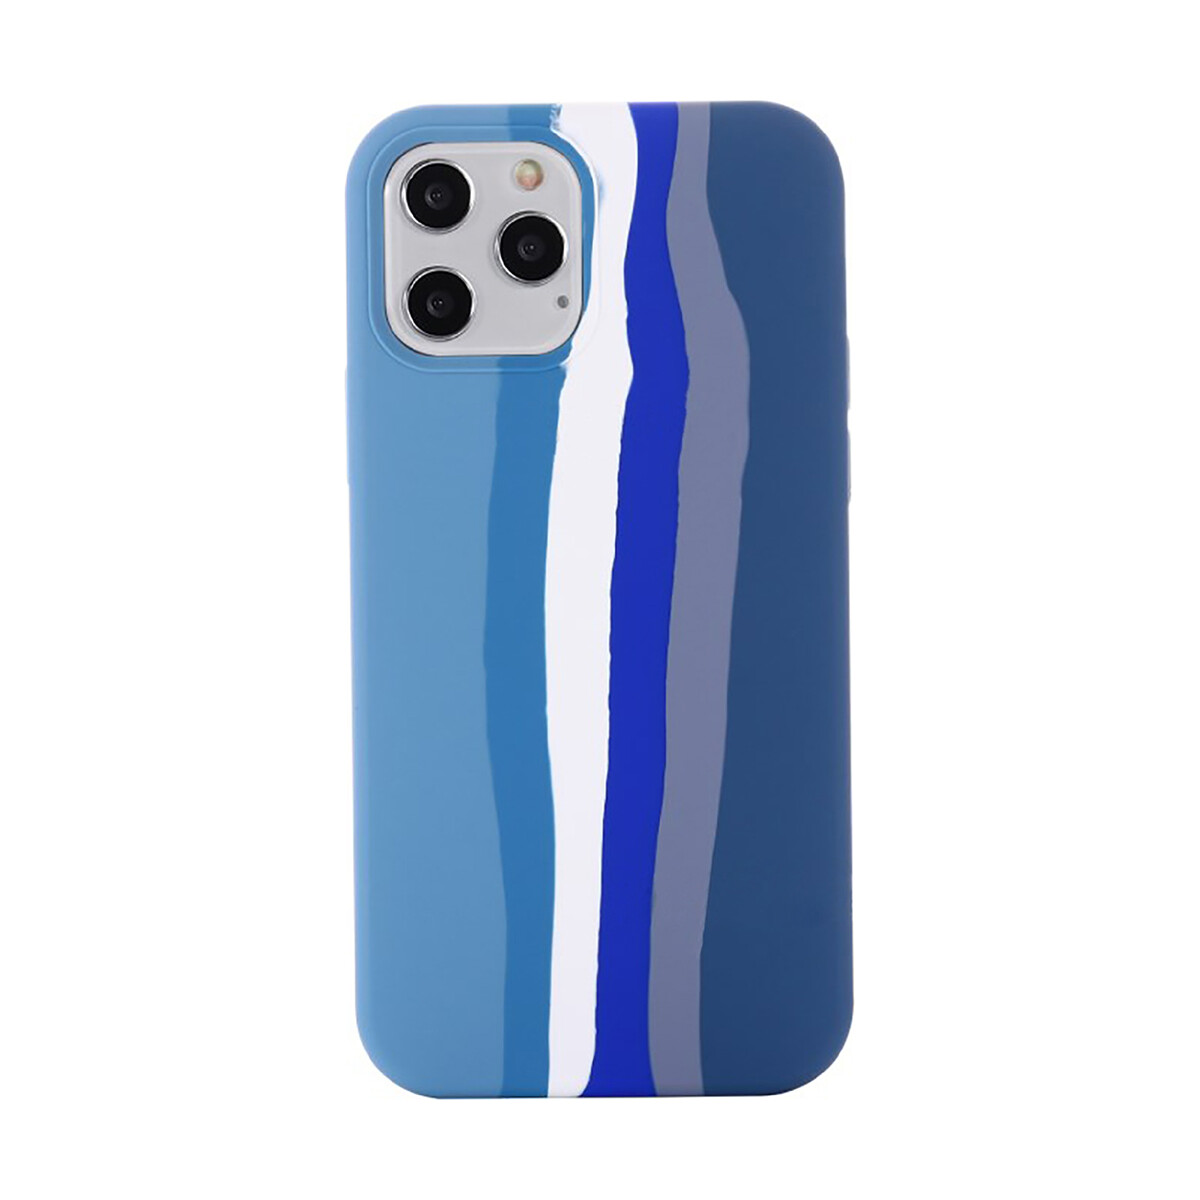 Protector case de silicona para iphone 11 pro - Azul 